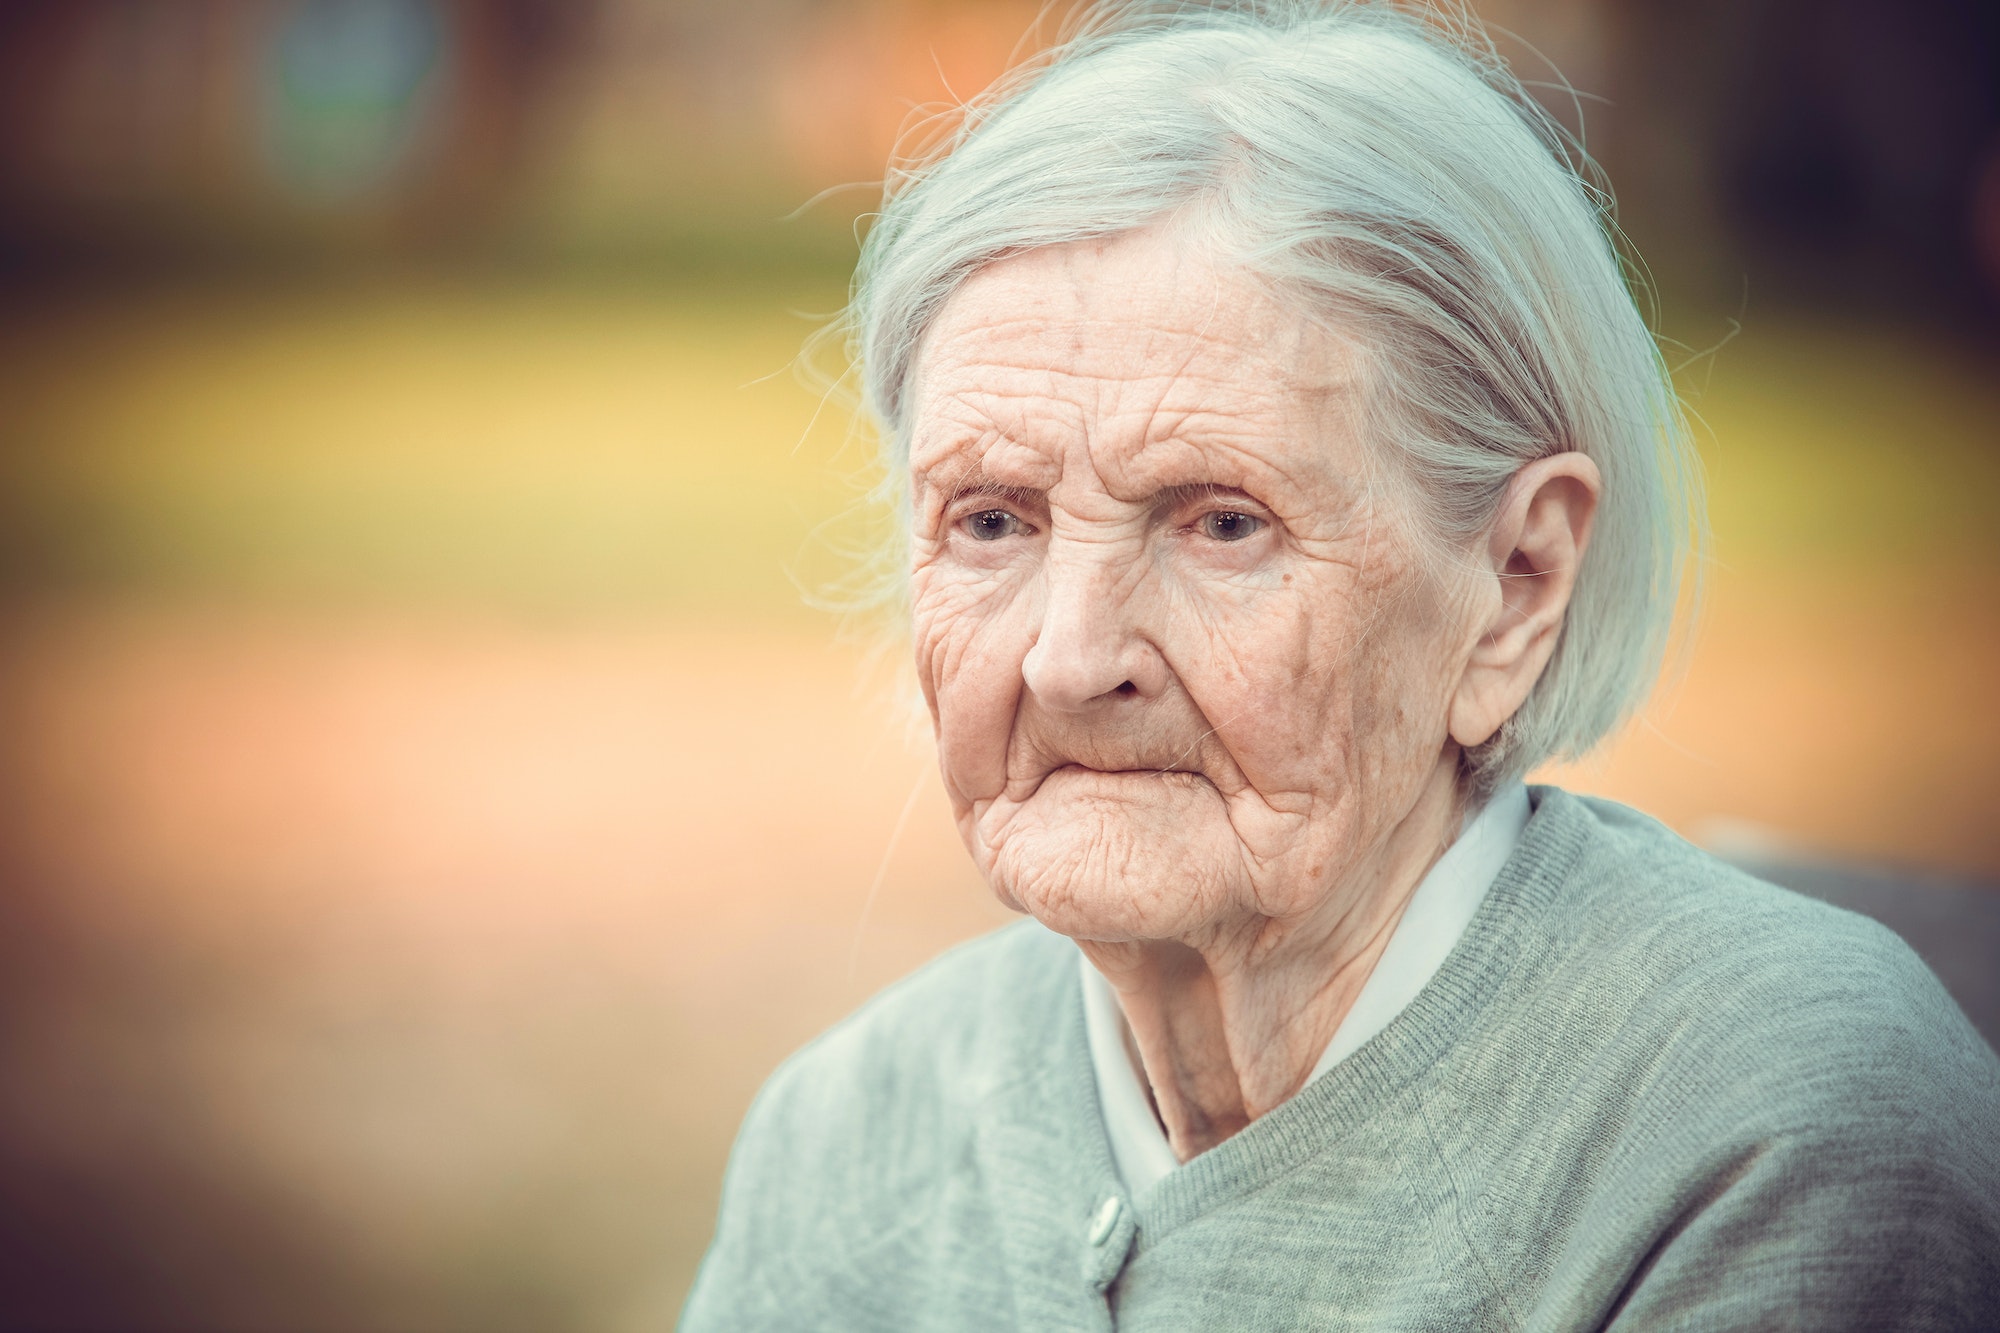 Portrait of pensive senior woman